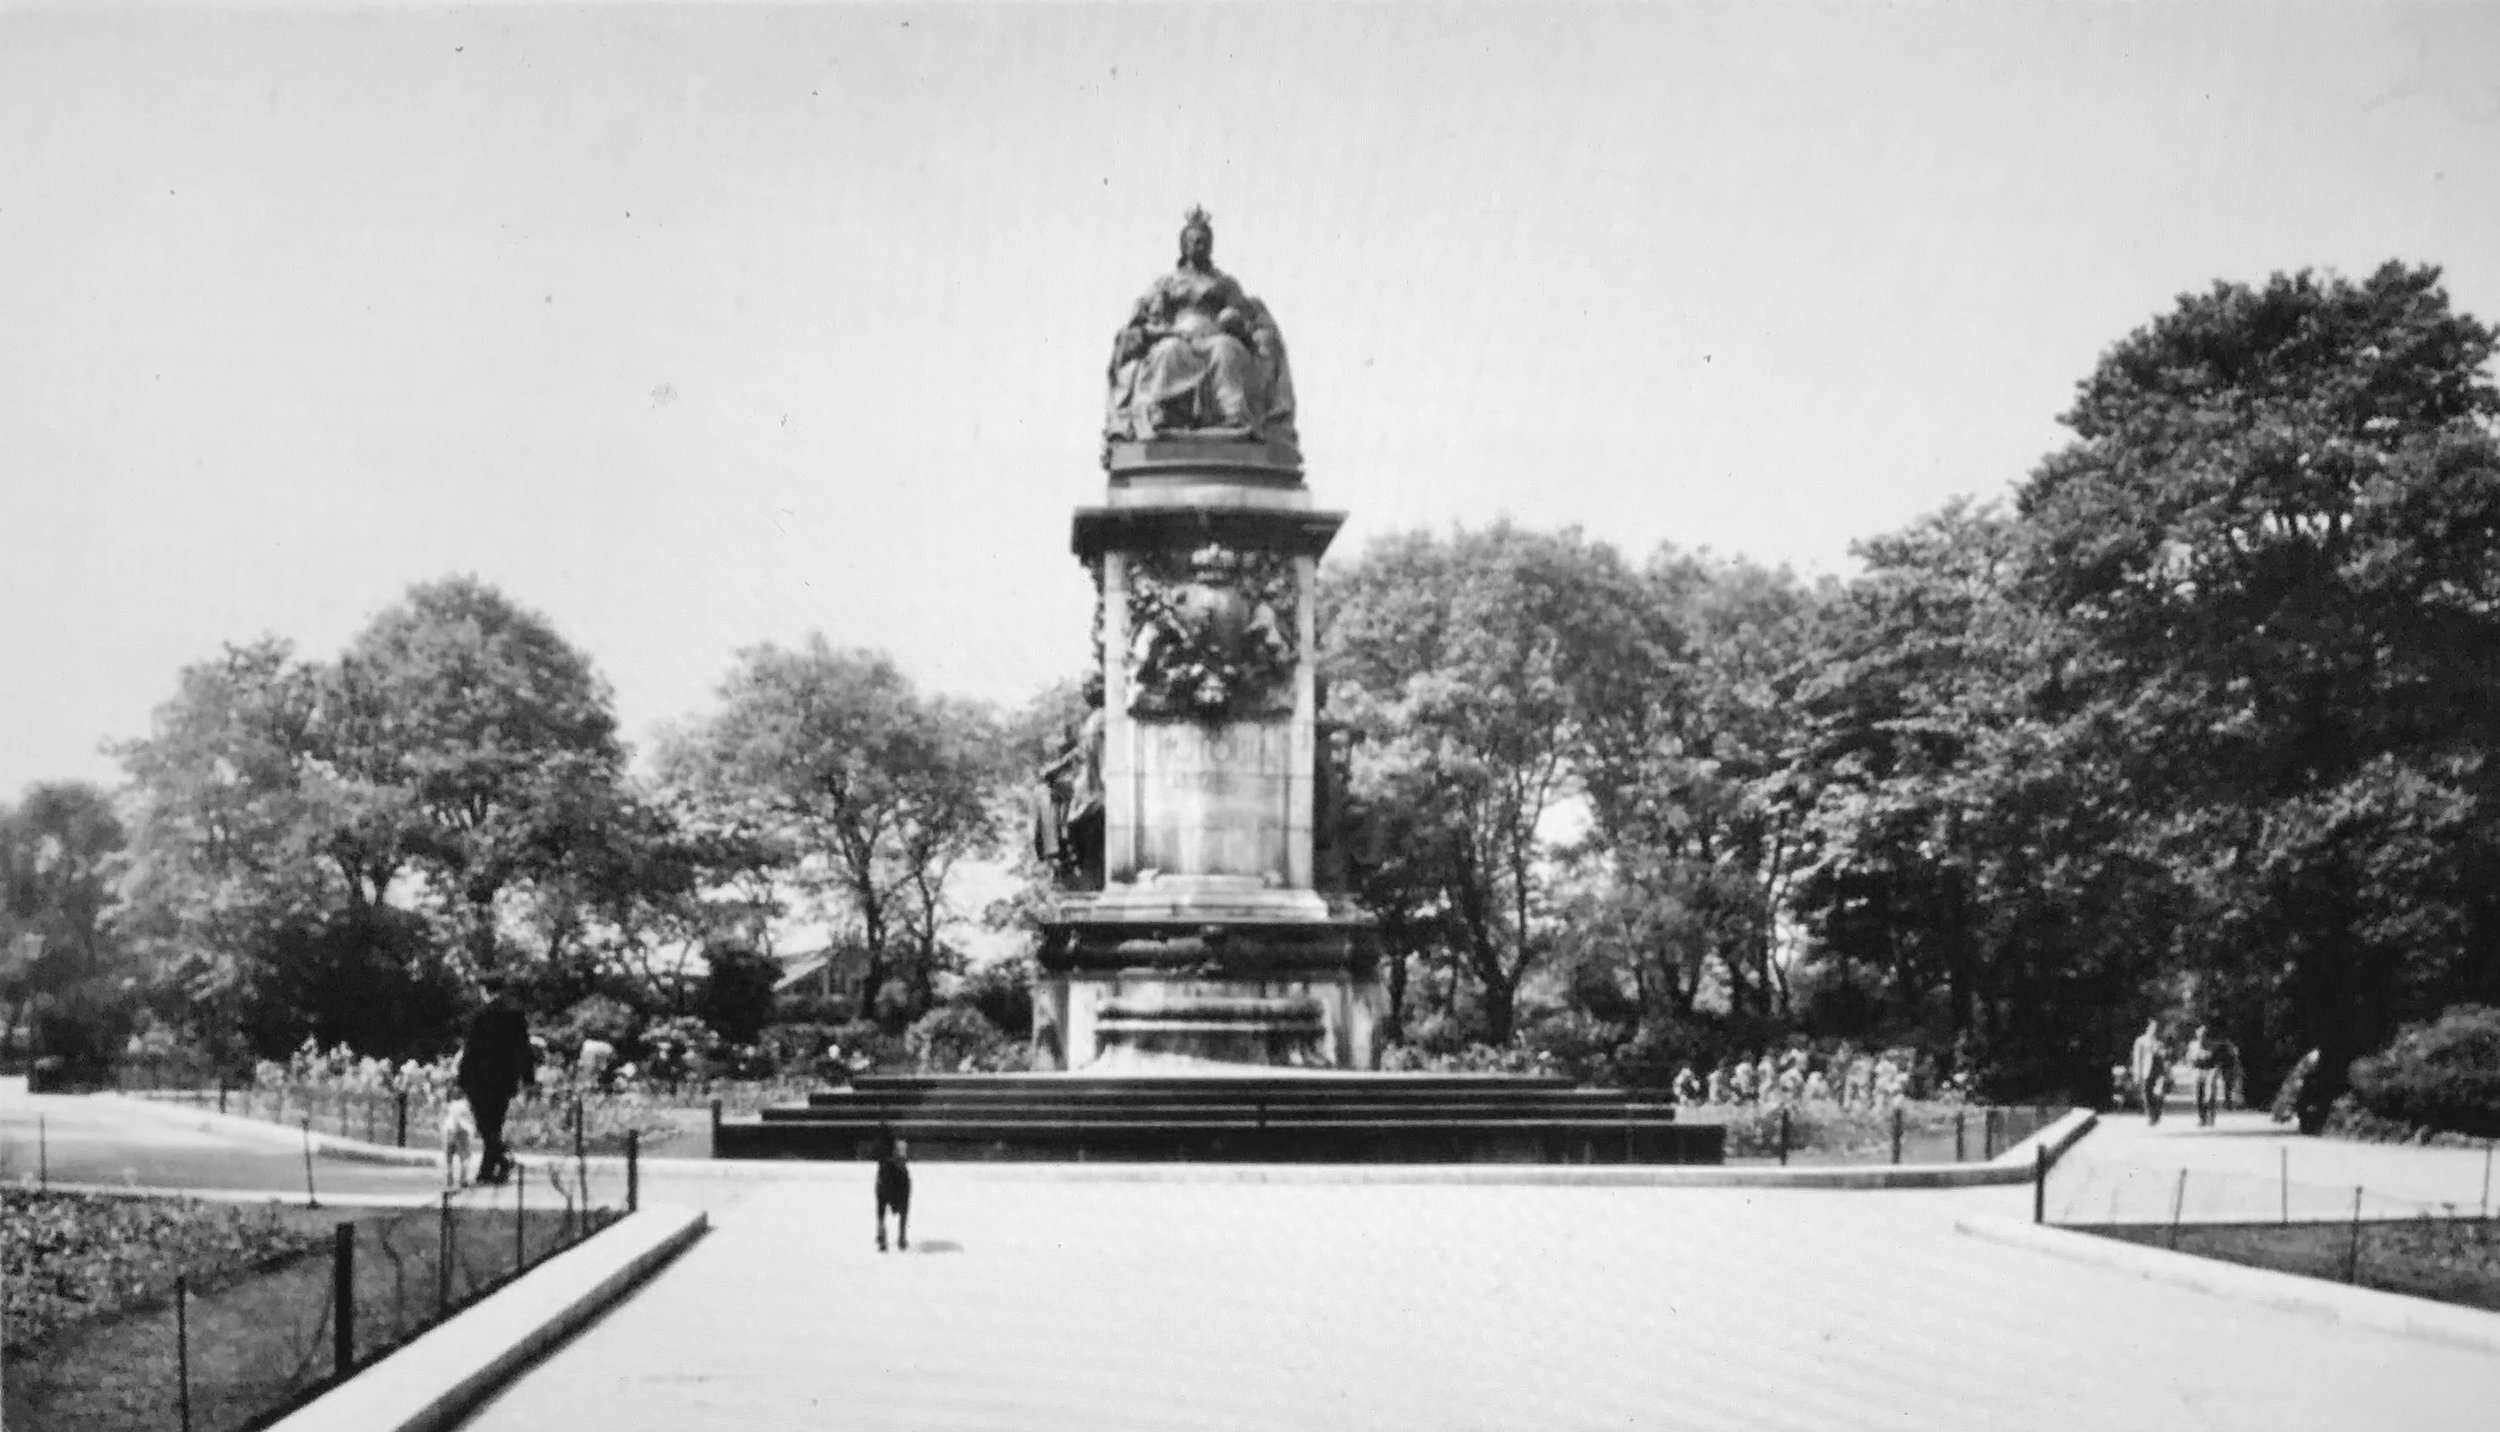 Queen Victoria Statue, Woodhouse Moor, undated